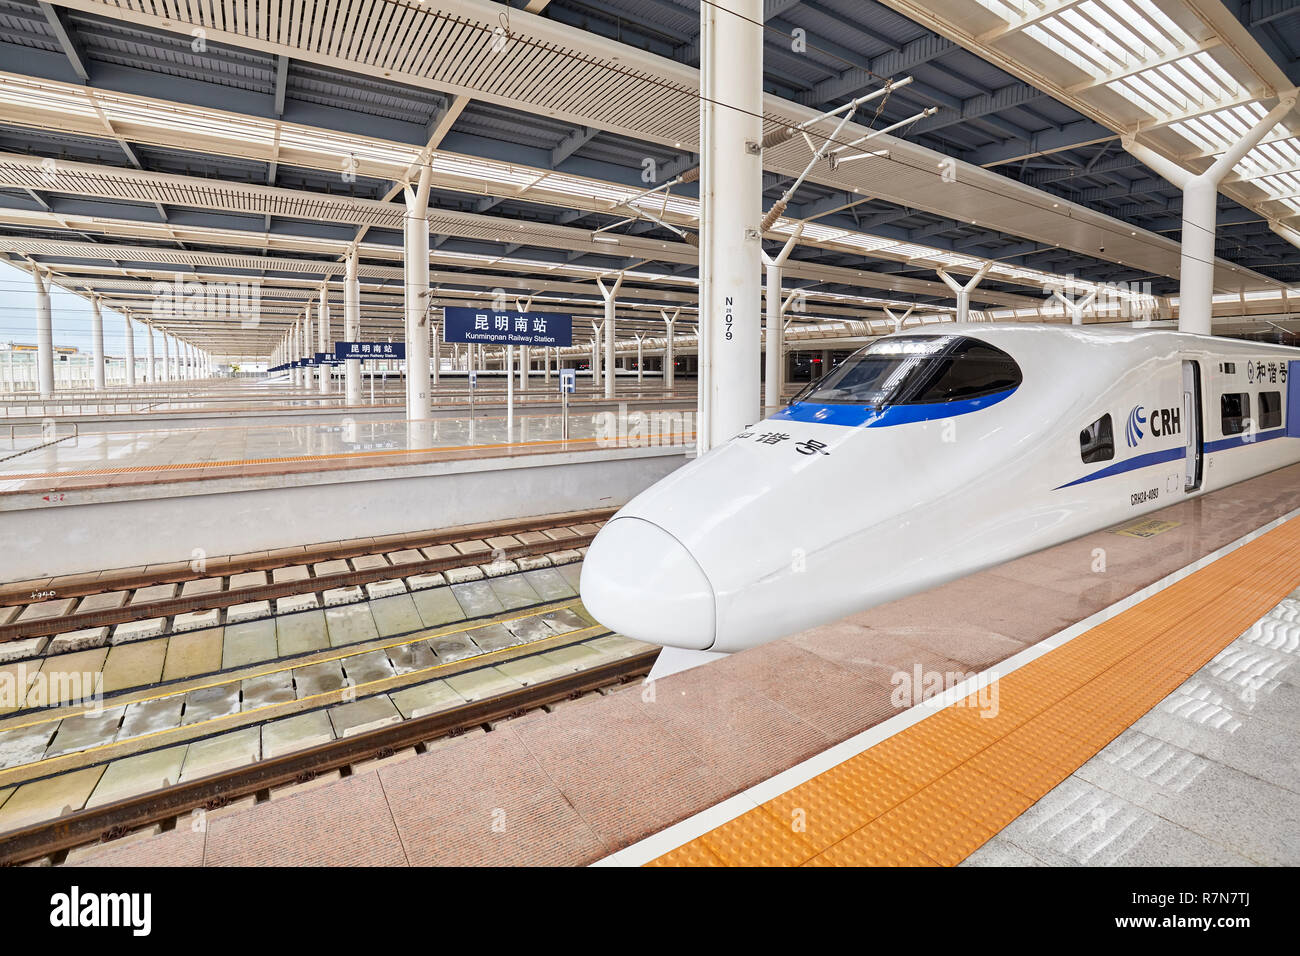 Kunming, China - Septiembre 21, 2017: el tren de alta velocidad sale de la estación. Red ferroviaria con aproximadamente 28 000 km de largo en 2018, el ferrocarril de alta velocidad (HS Foto de stock